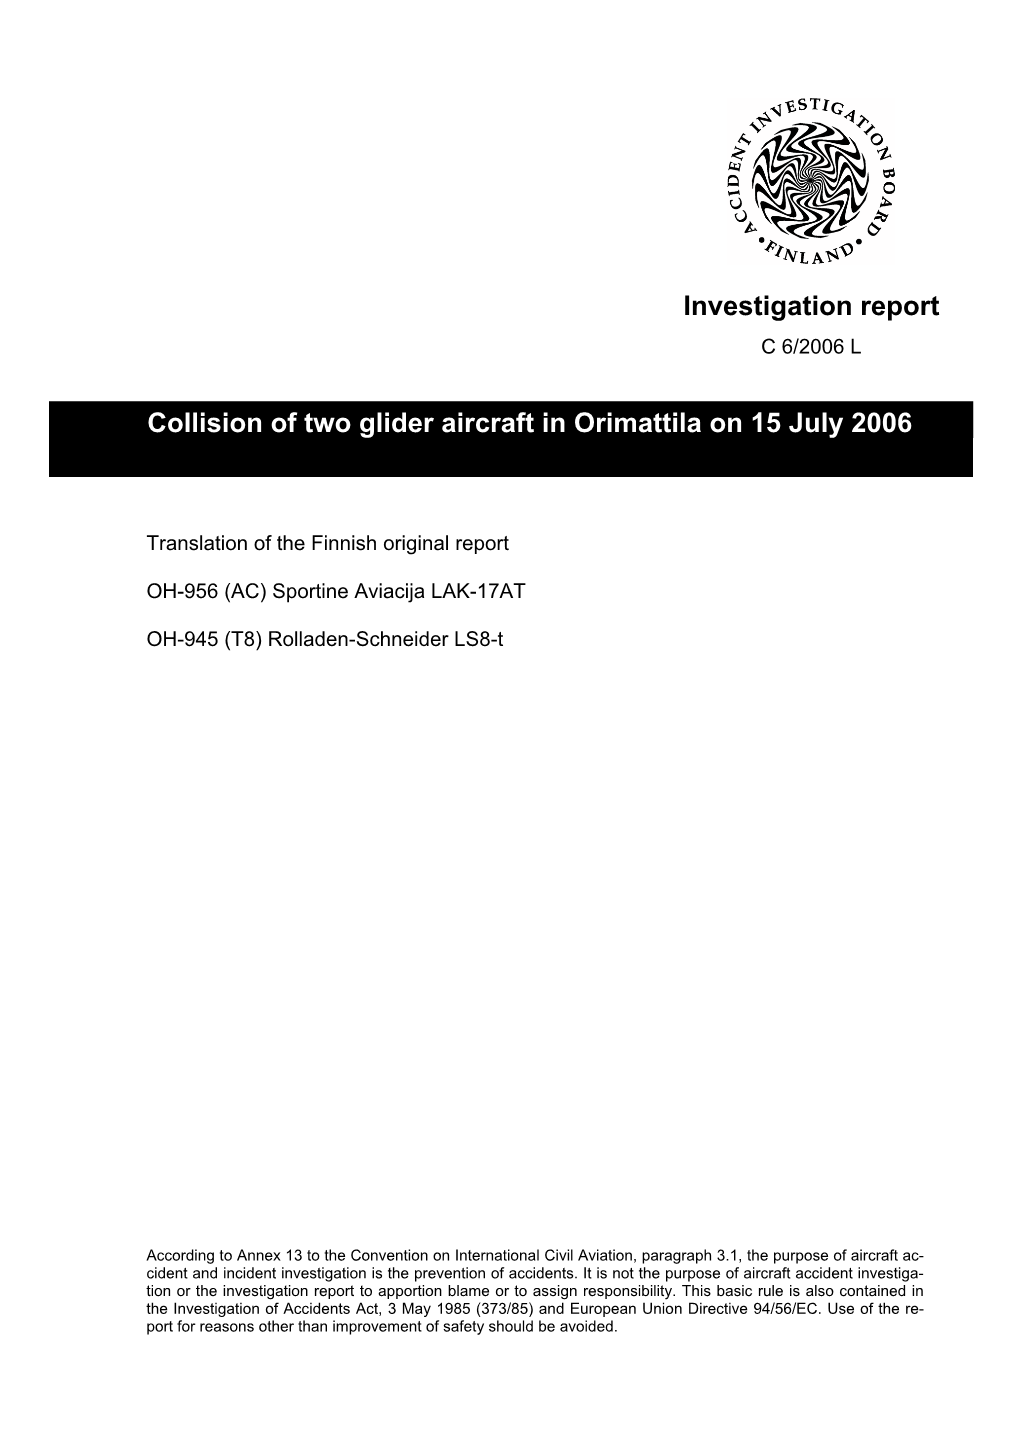 Investigation Report Collision of Two Glider Aircraft in Orimattila on 15